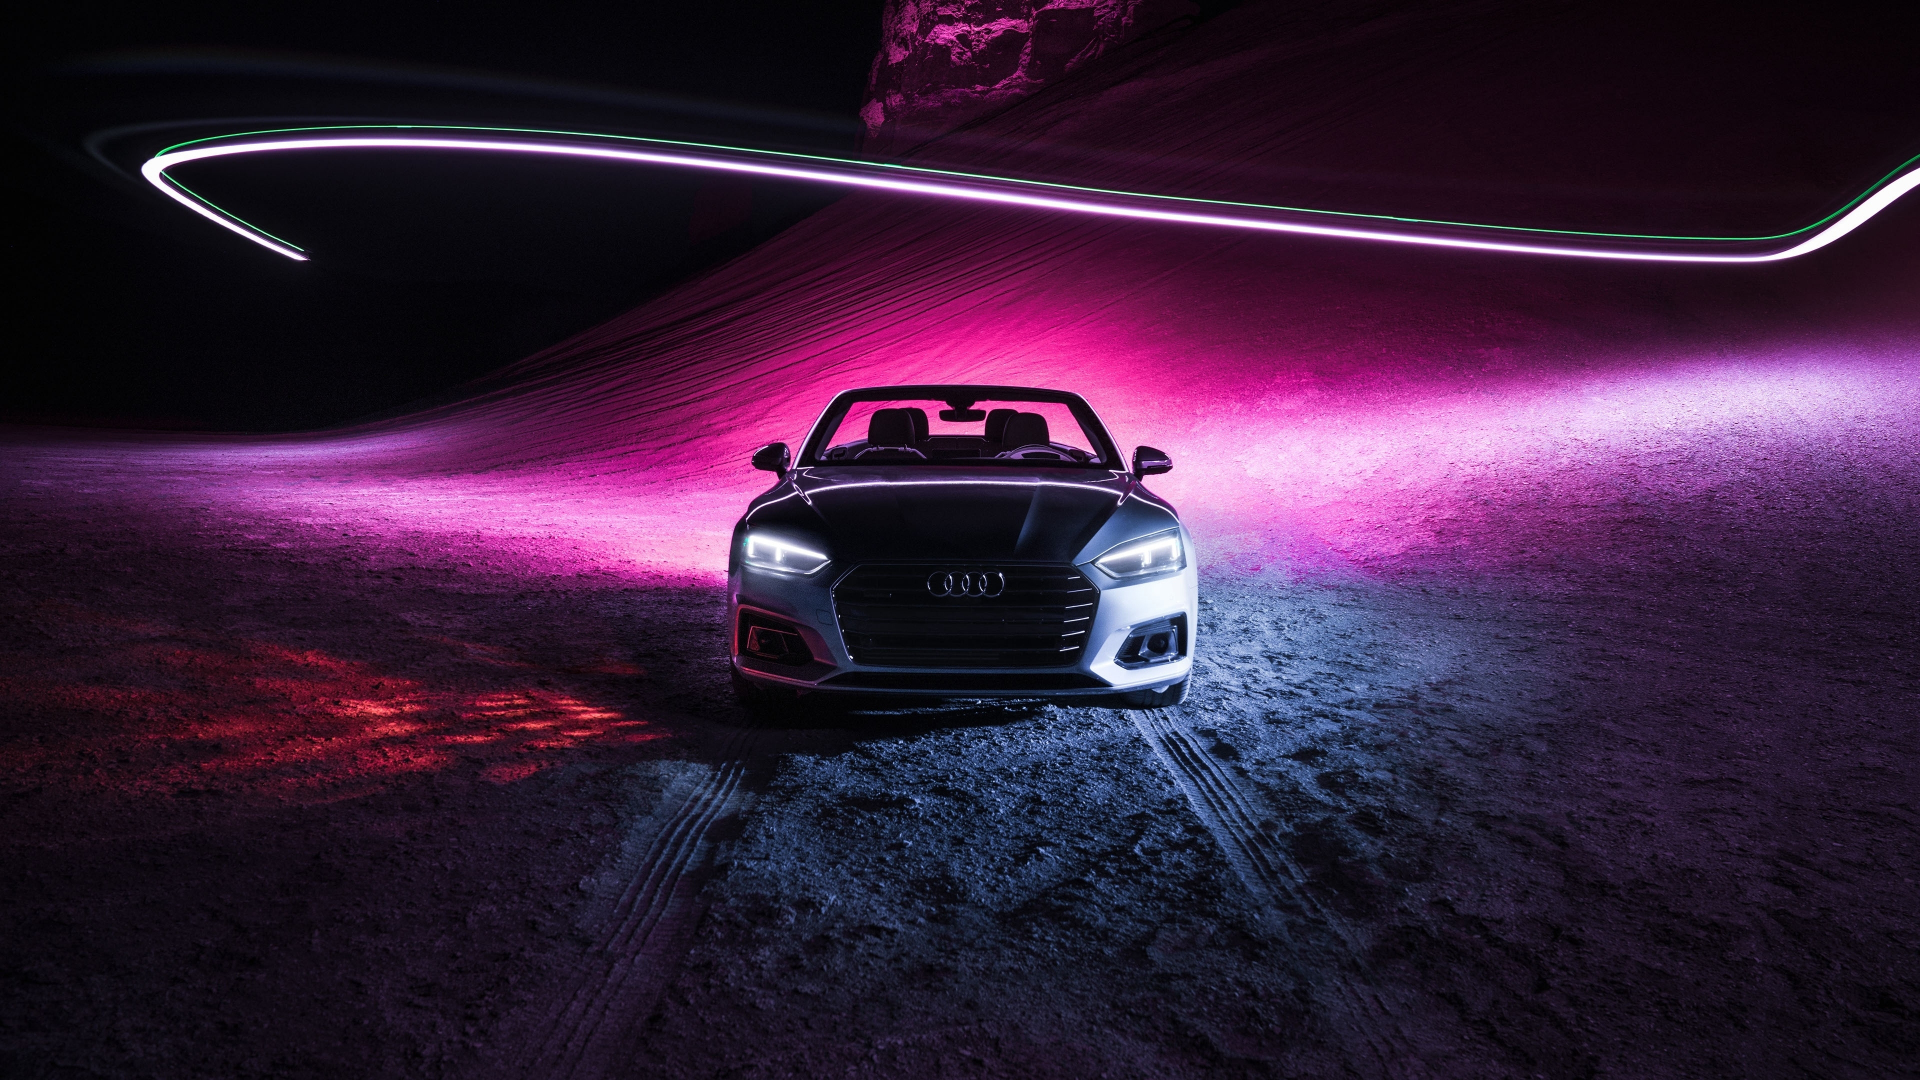 Audi HD wallpapers | Pxfuel